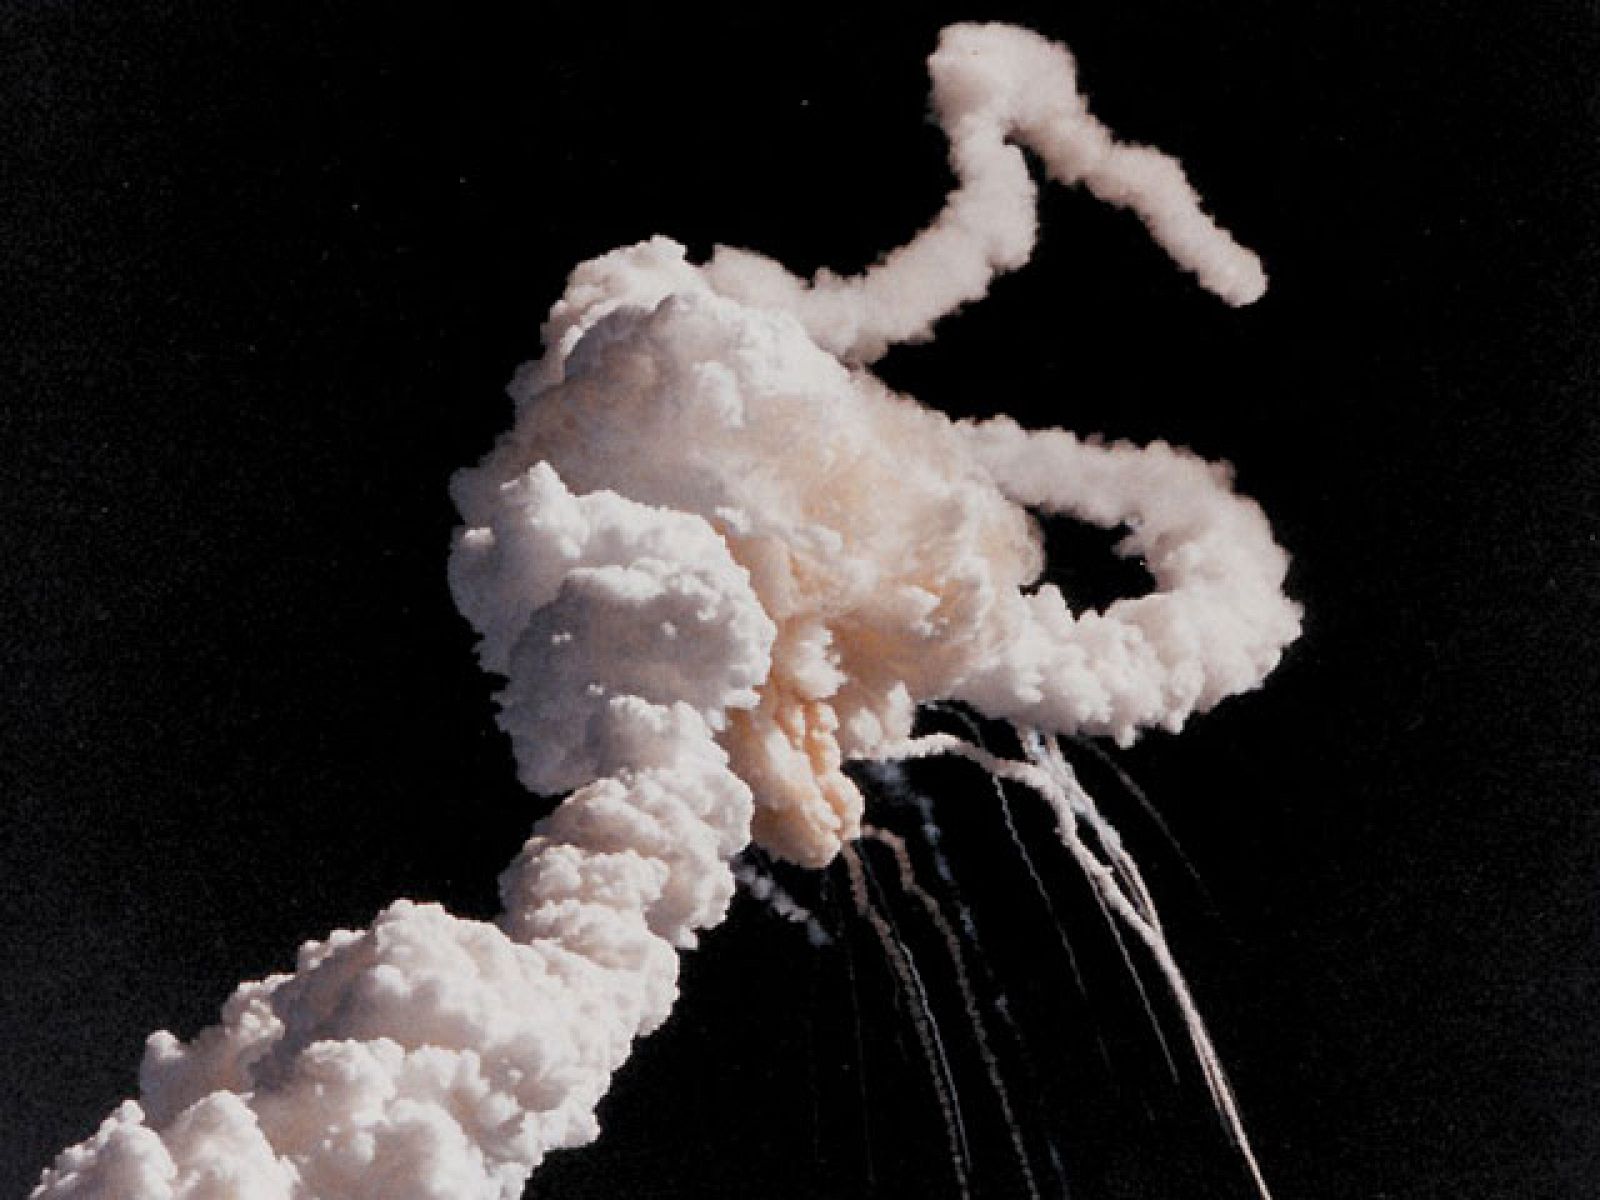 Informe Semanal emitió este reportaje cuatro días después de la catástrofe del Challenger hace 25 años. Era la décima misión del transbordador espacial.